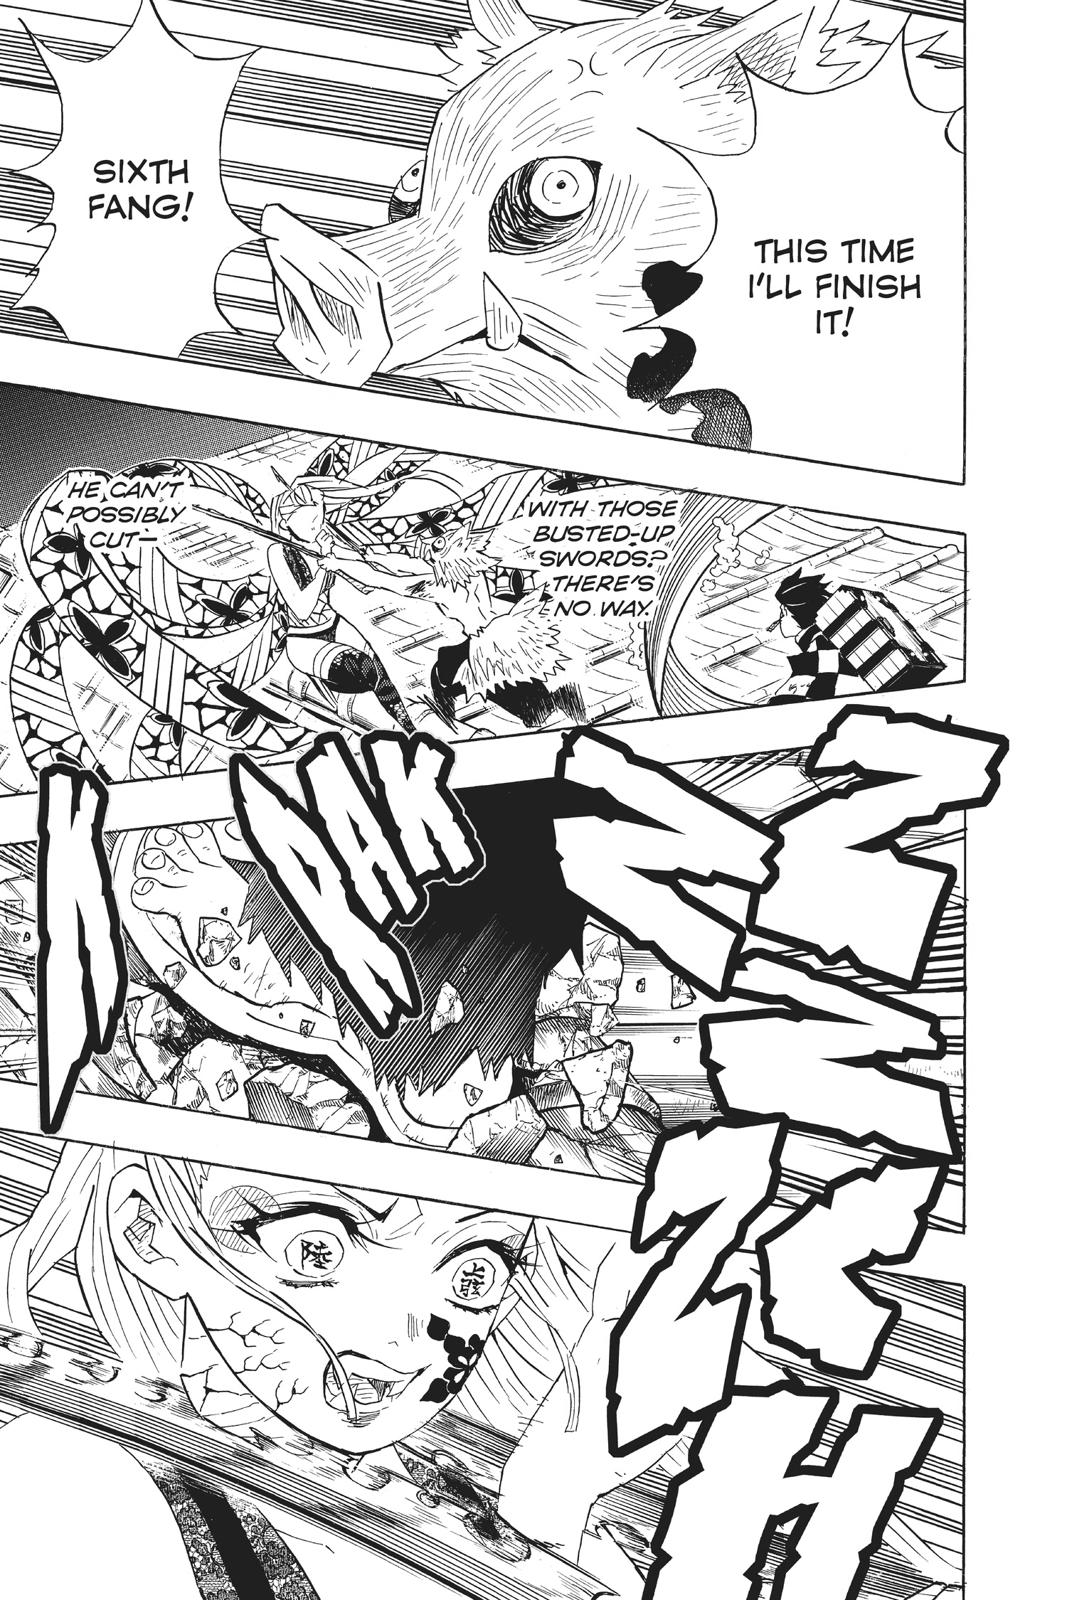 Demon Slayer Manga Manga Chapter - 91 - image 16